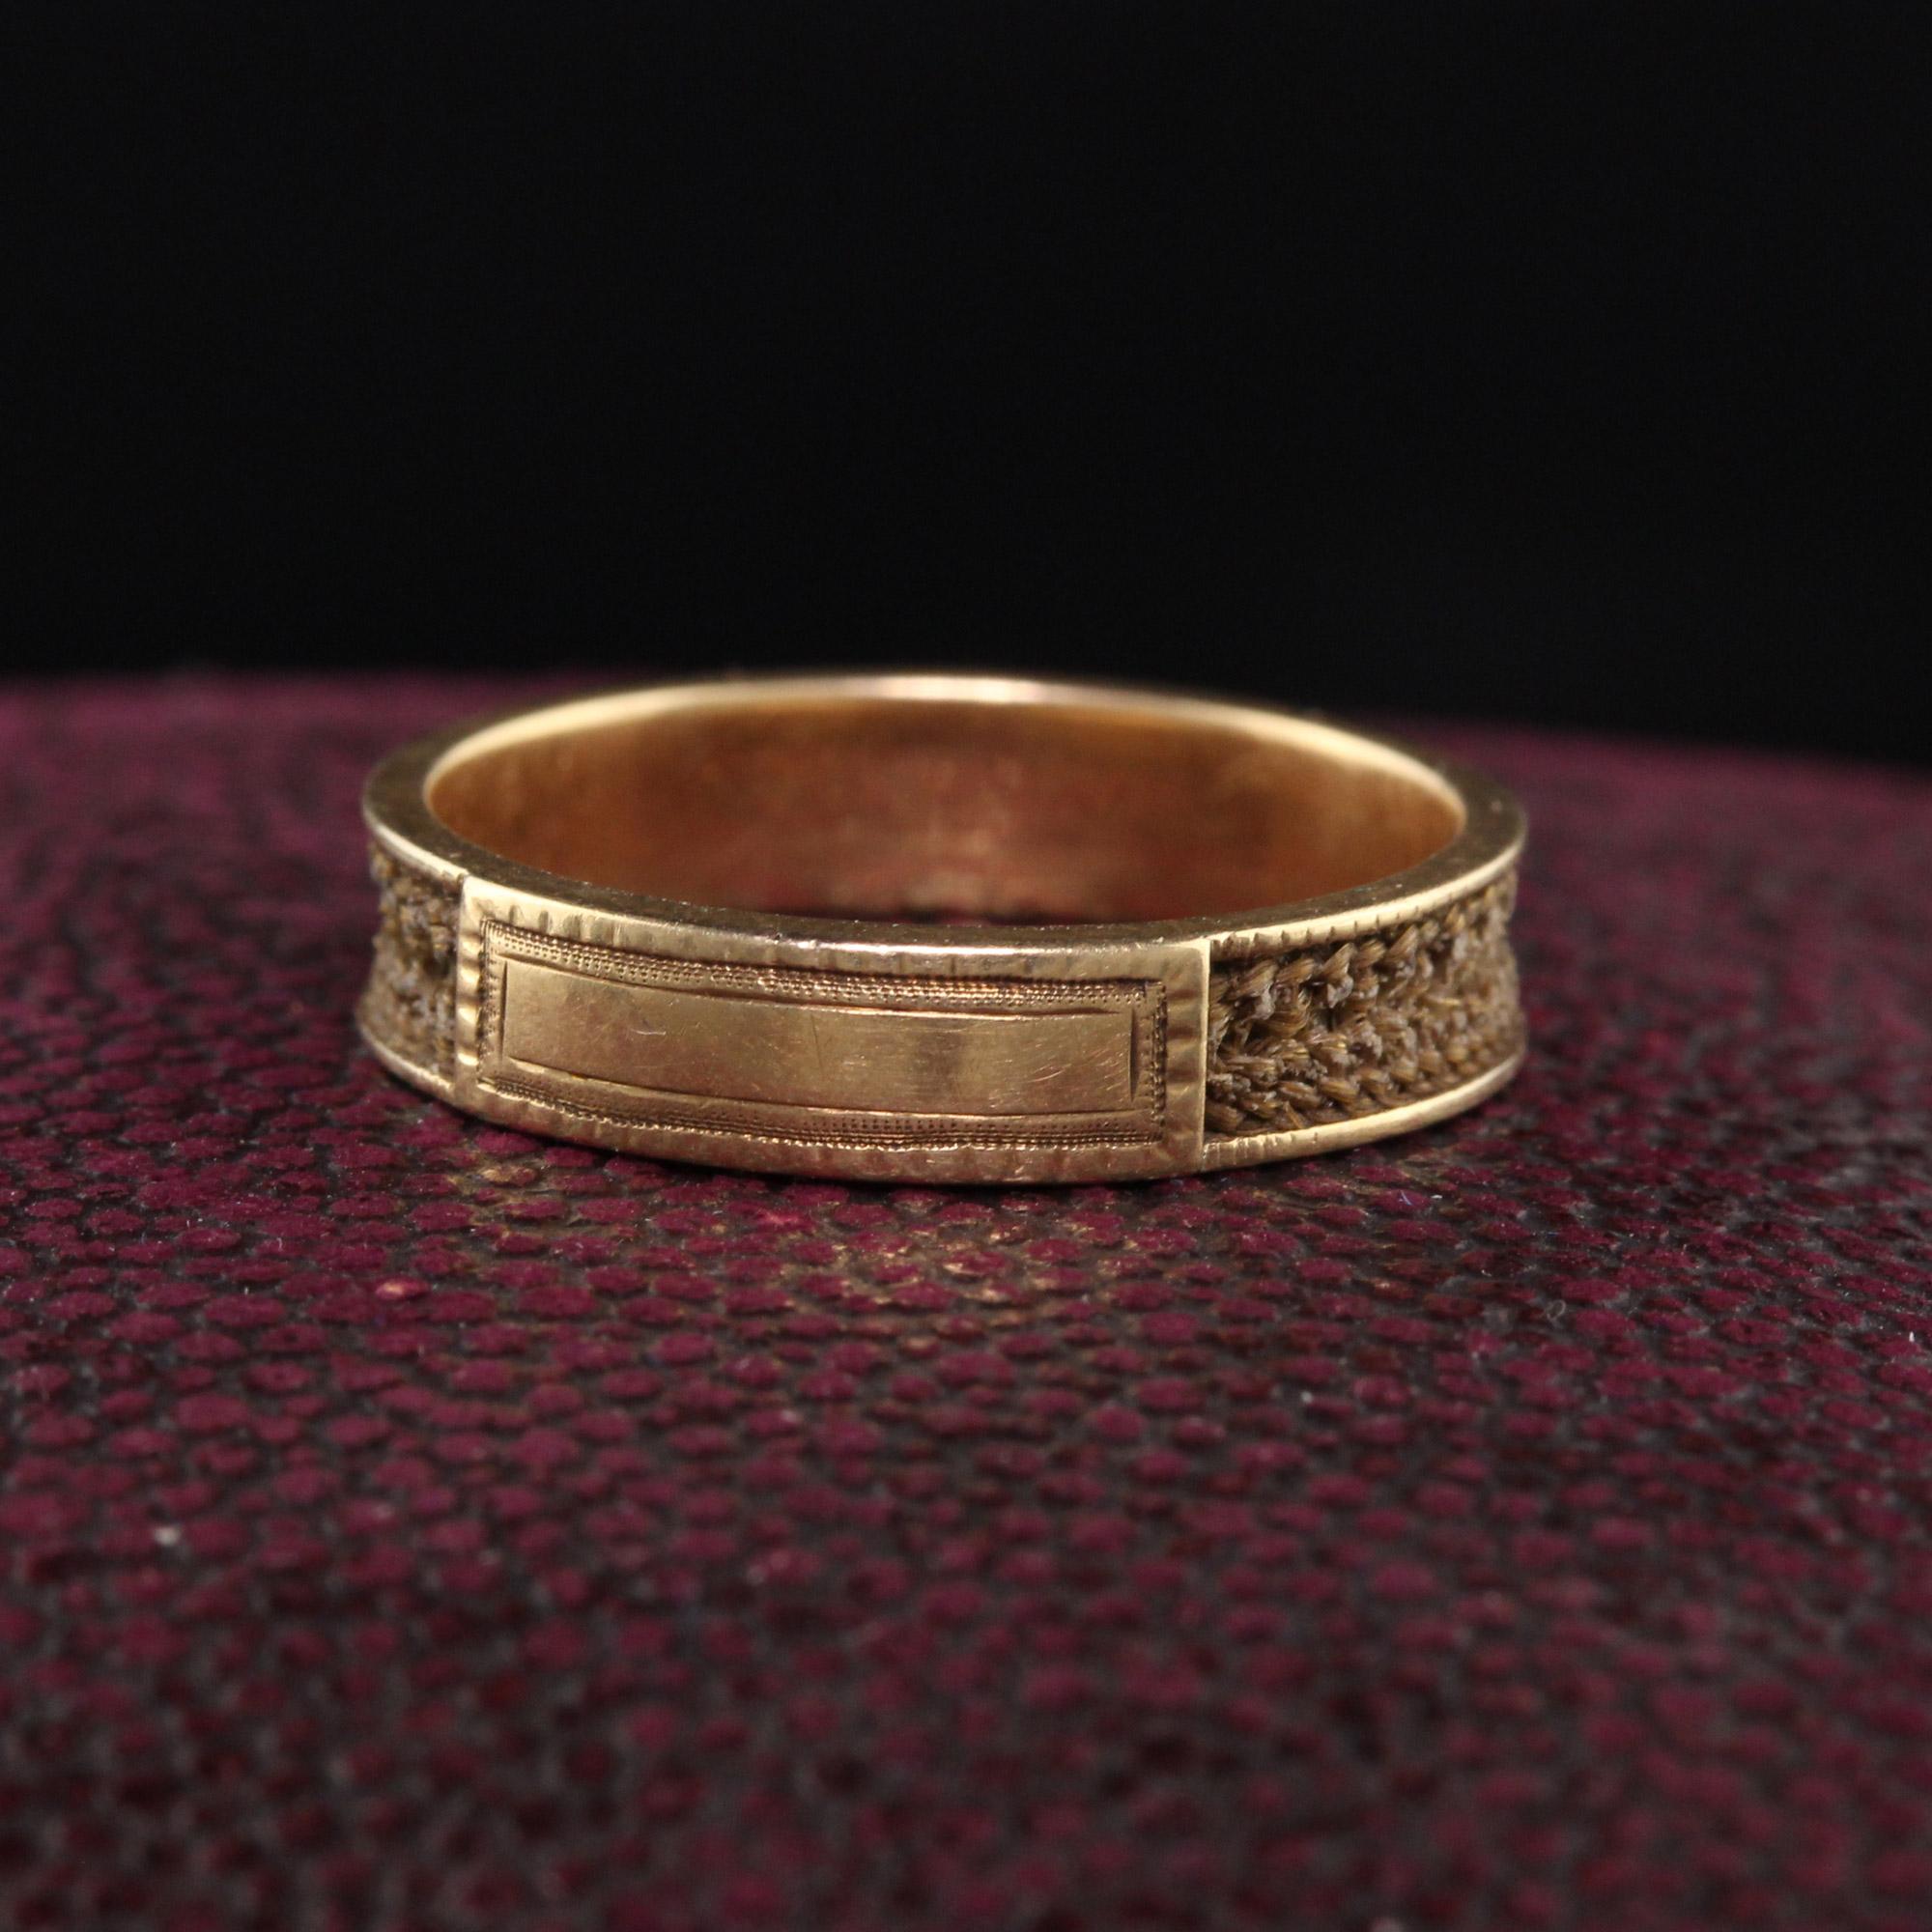 Schöne antike viktorianische 14K Gelbgold Mourning Hair Band Ring. Dieser erstaunliche Trauerring hat noch die Haare intakt und ist nicht mit irgendwelchen Initialen graviert! Es ist sehr selten, Ringe dieses Alters ohne Initialen zu